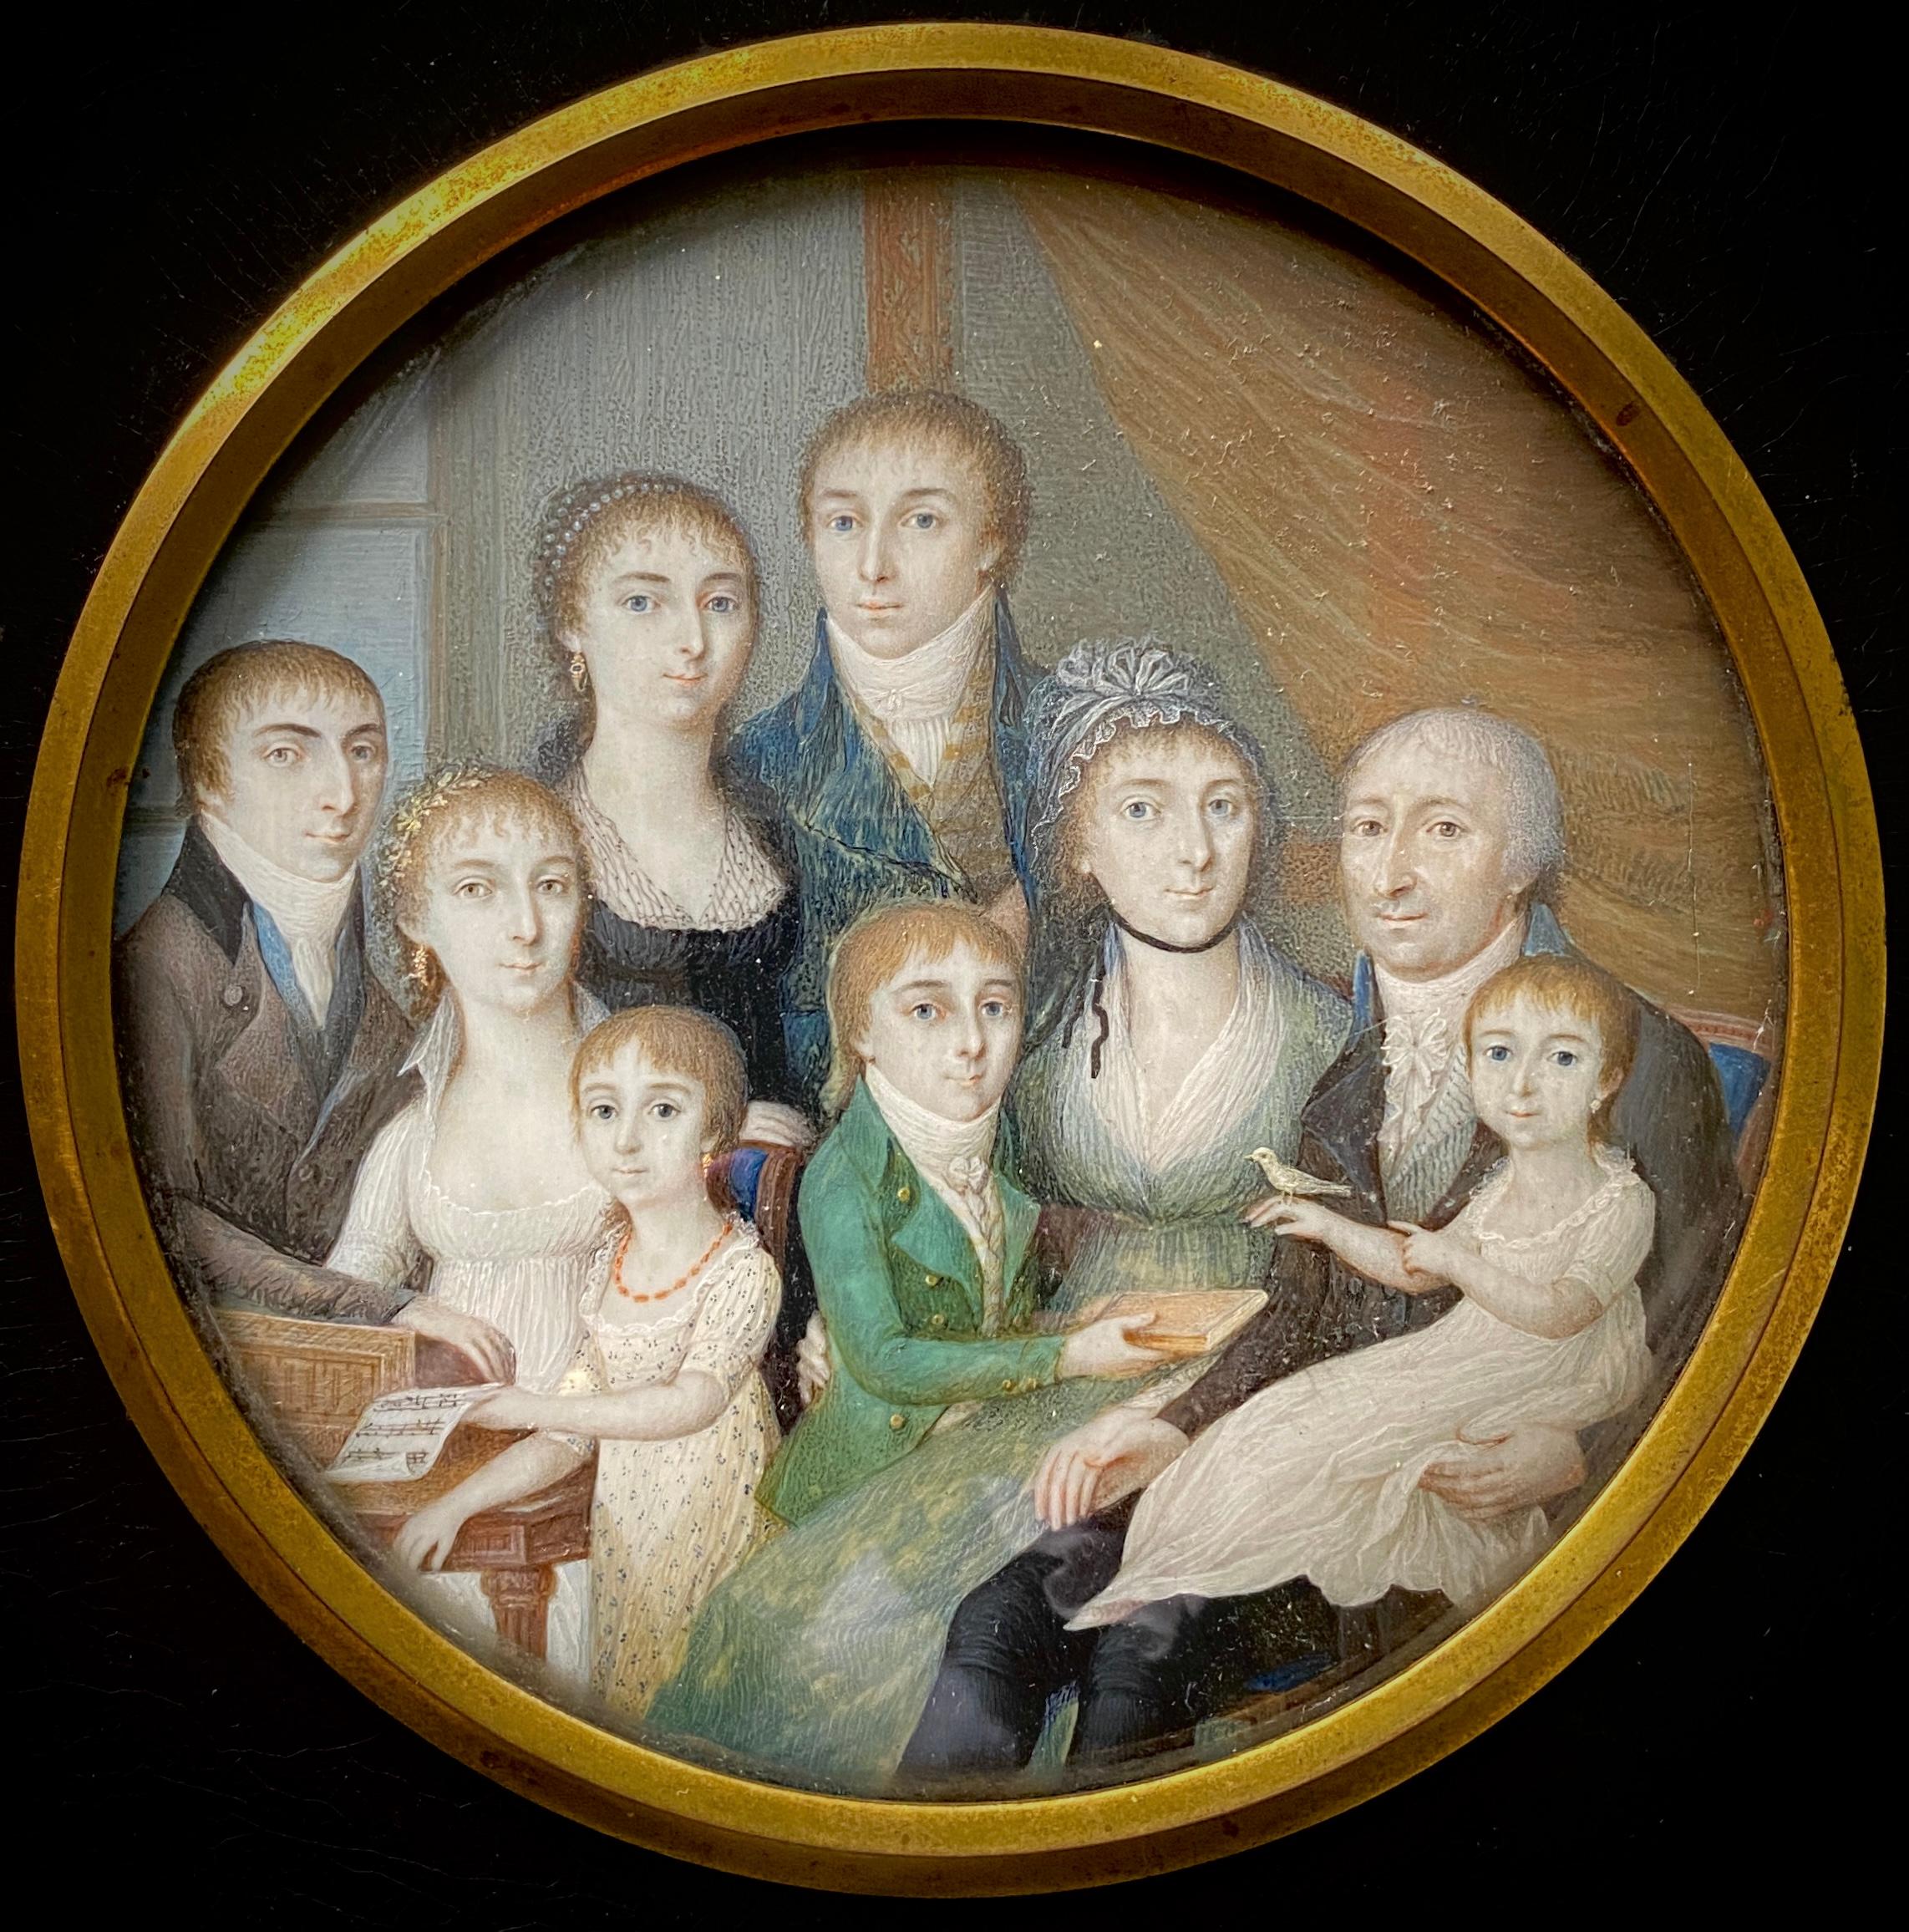 Portrait de famille scandinave, artiste, 18ème siècle, école scandinave